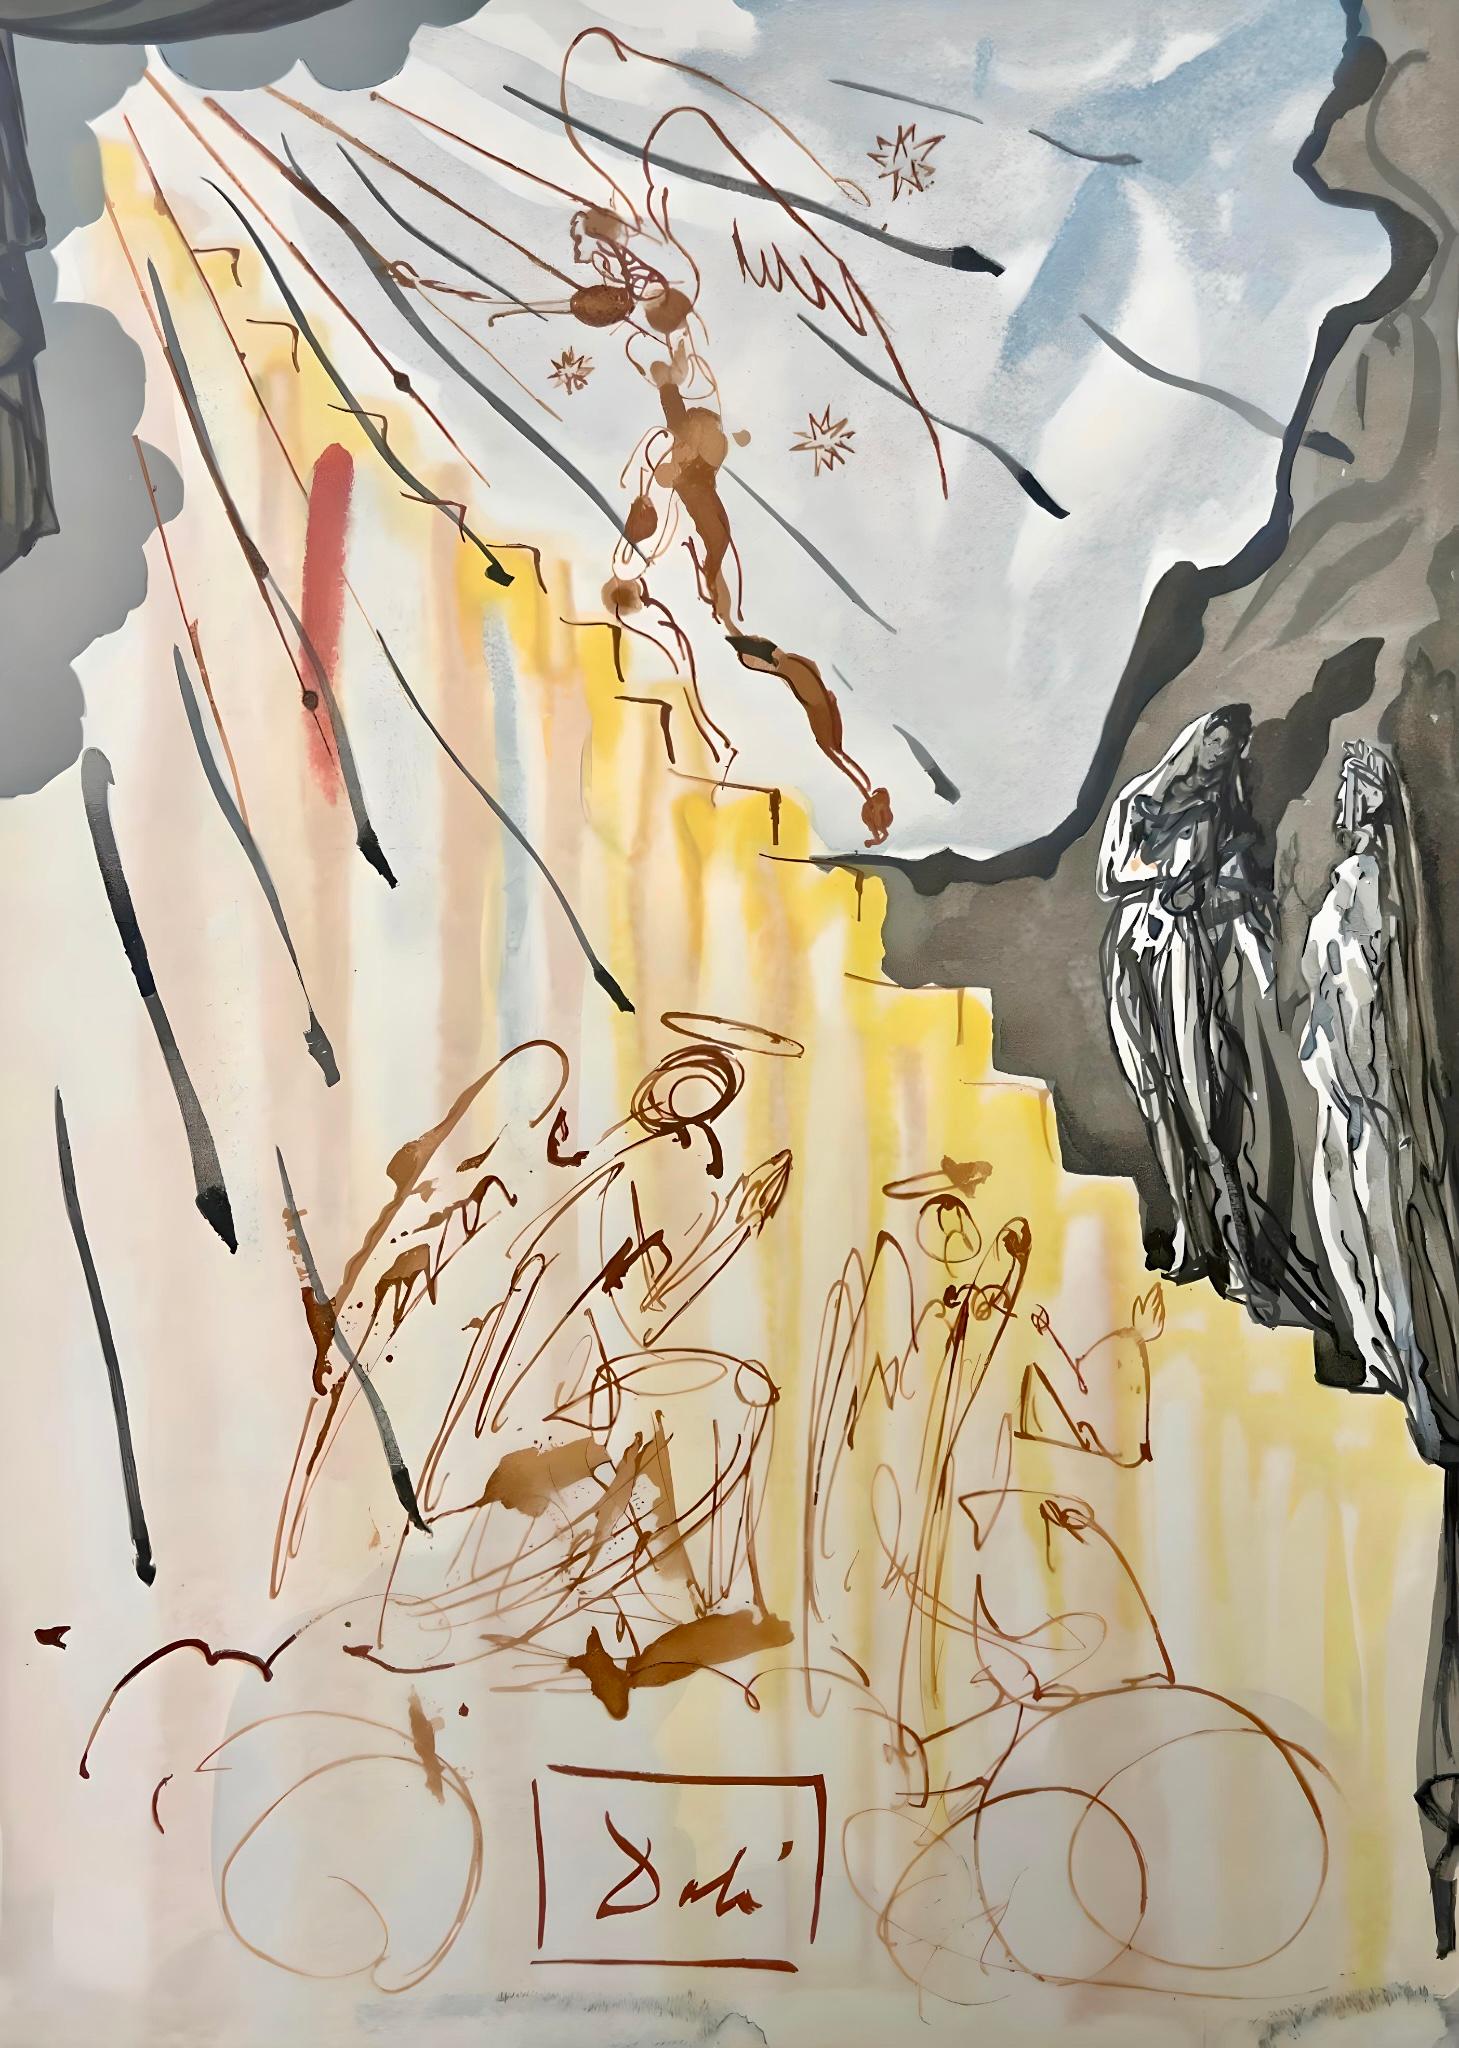 Artistics : Salvador Dali (1904-1989)
Suite : Göttliche Komödie (La Divine Comédie)
Année : 1974
Support : Gravure sur bois en couleurs sur papier vélin BFK Rives monté sur papier Arches.
Inscription : Signée en bloc, et non numérotée, telle